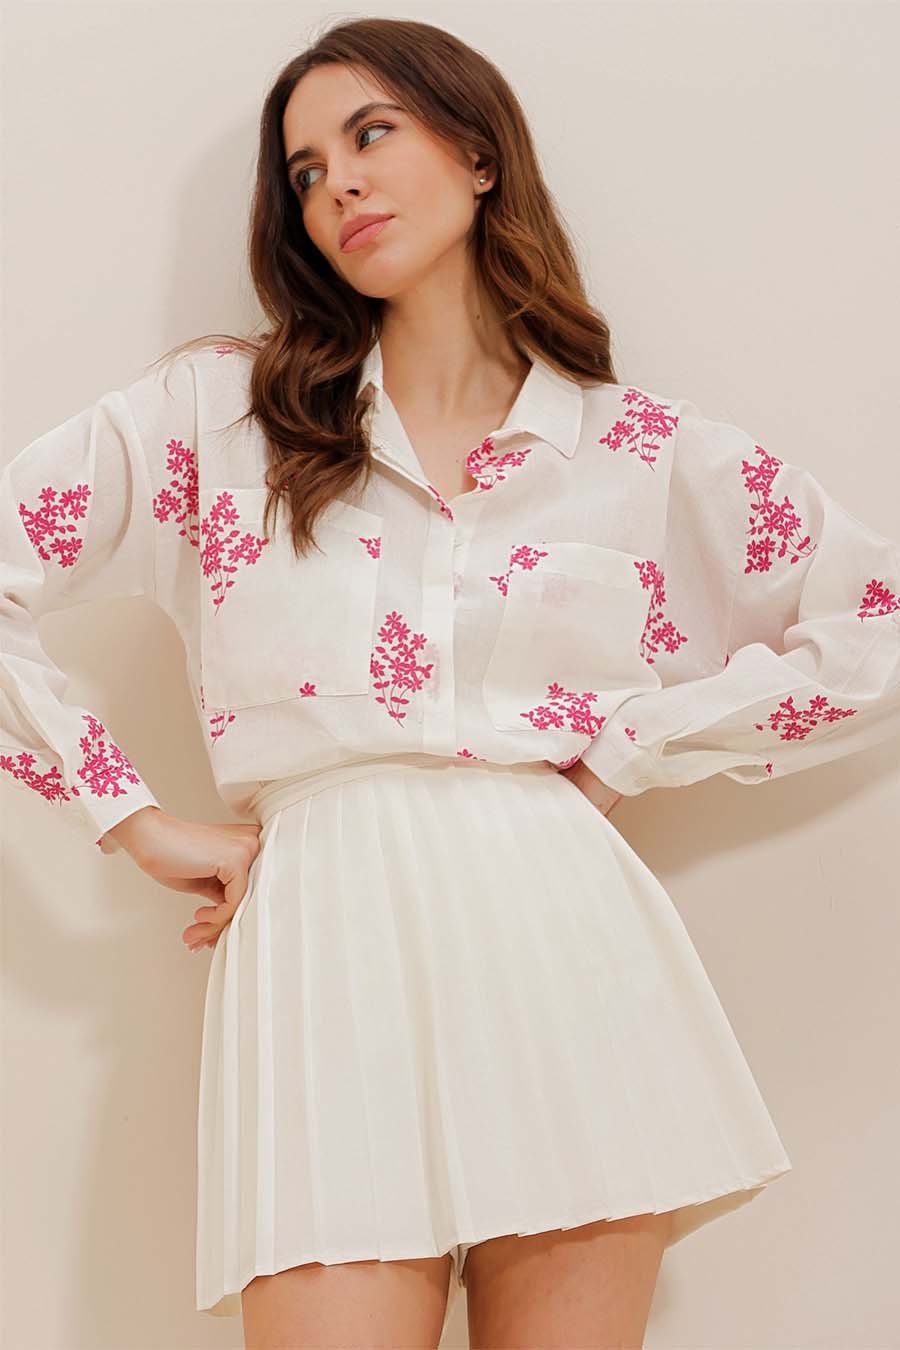 Γυναικείο πουκάμισο Darana, Λευκό/Ροζ 3